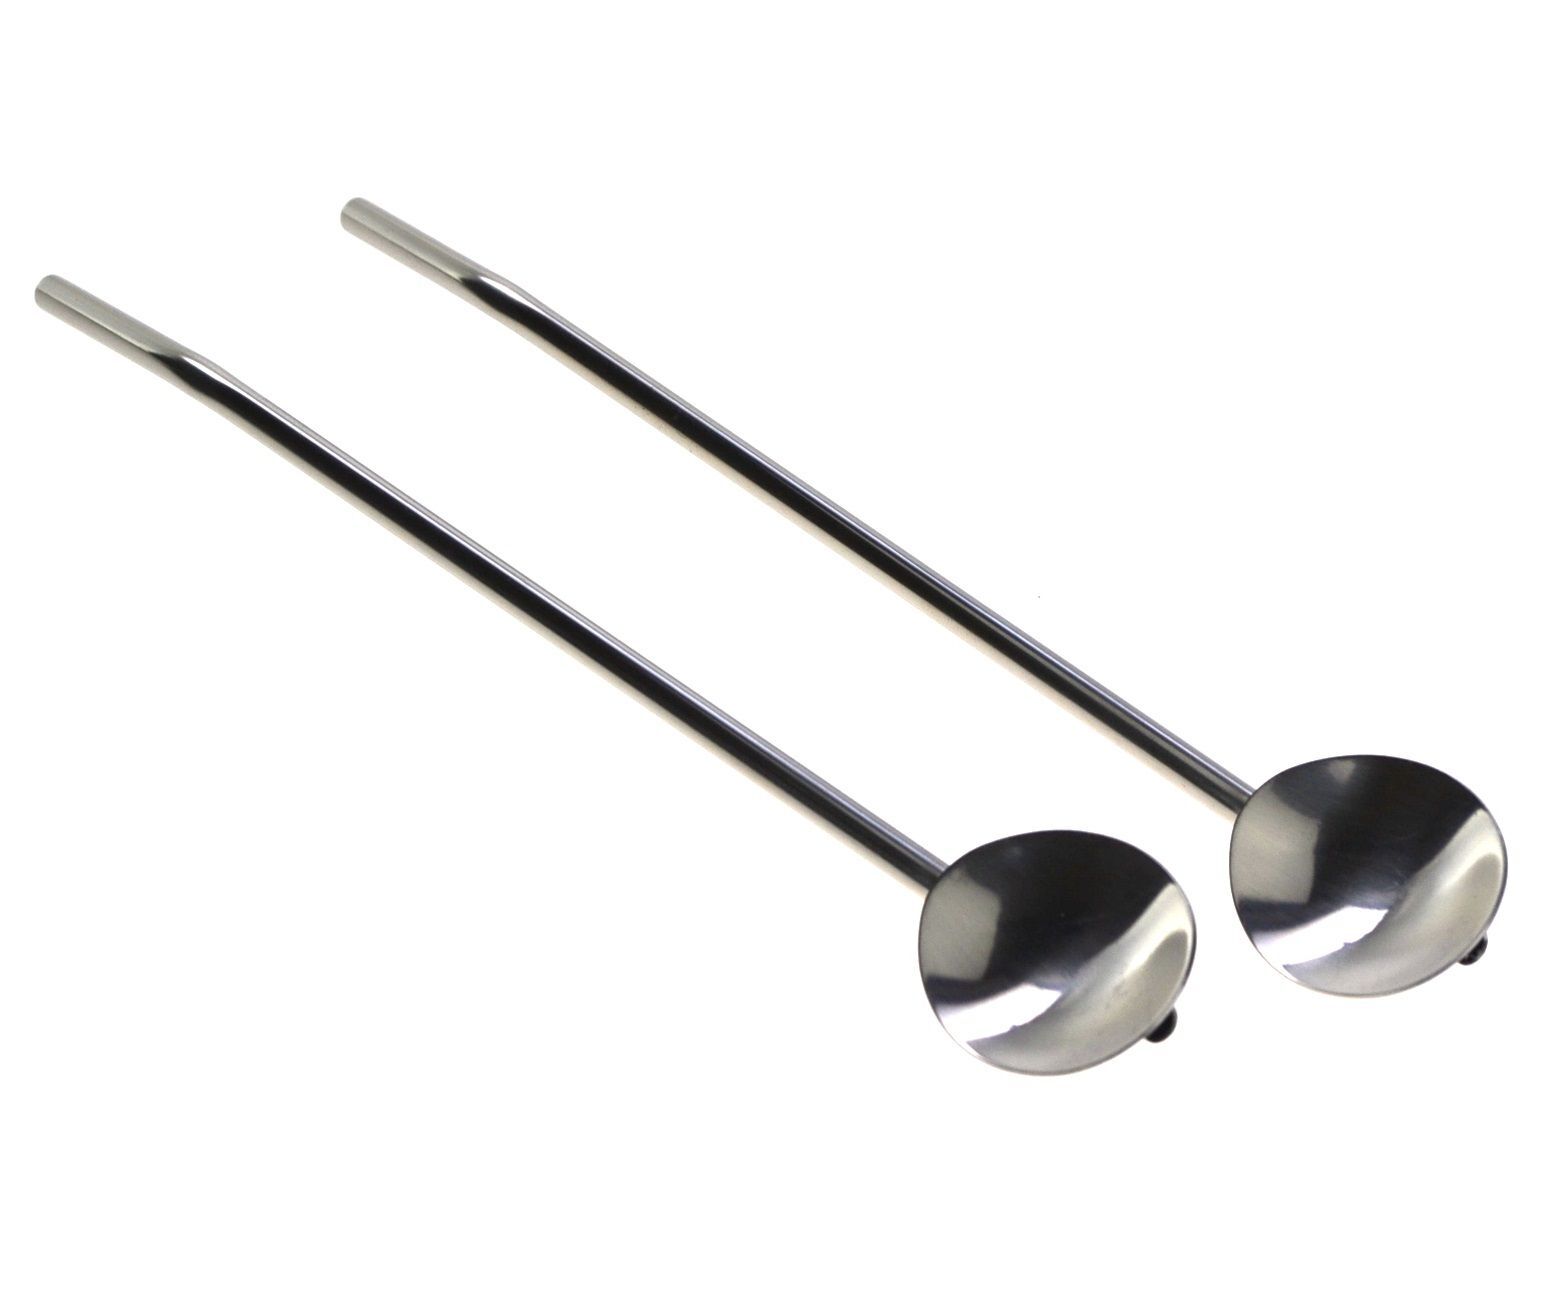 2 Casabarista Stainless Steel Spoon/Straw 19cm